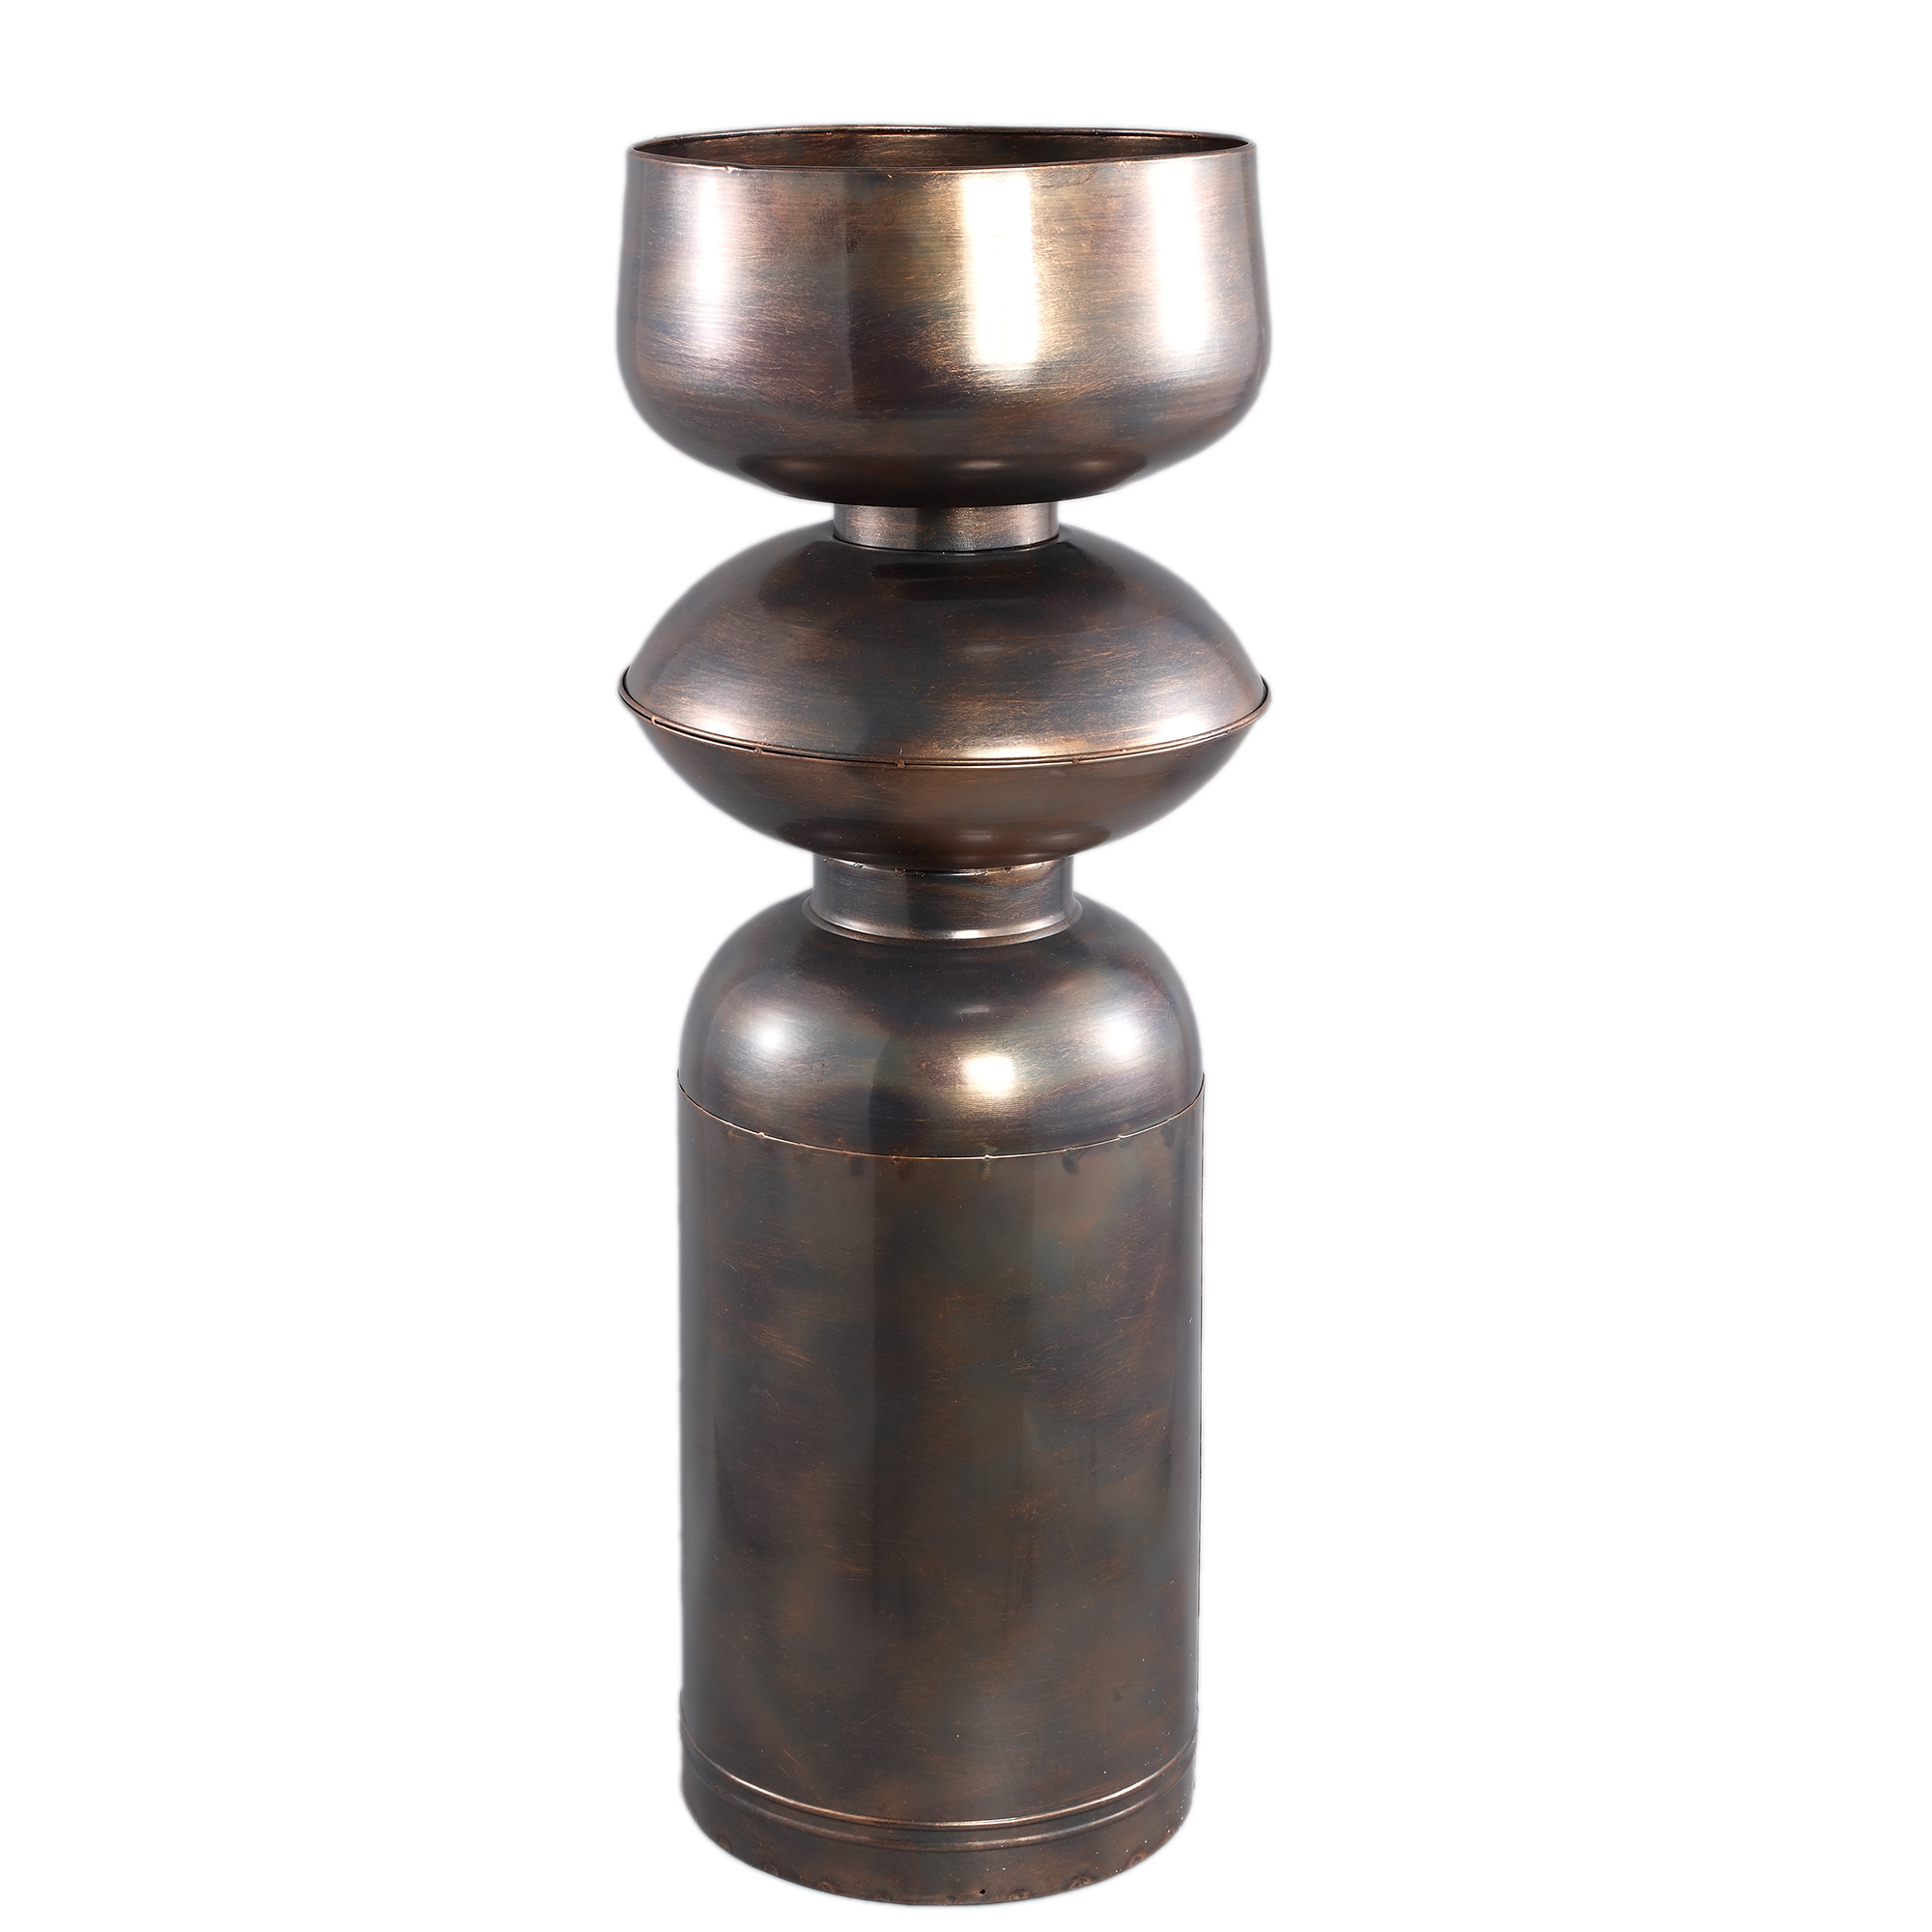 Nizze Copper big iron pot shaped round L